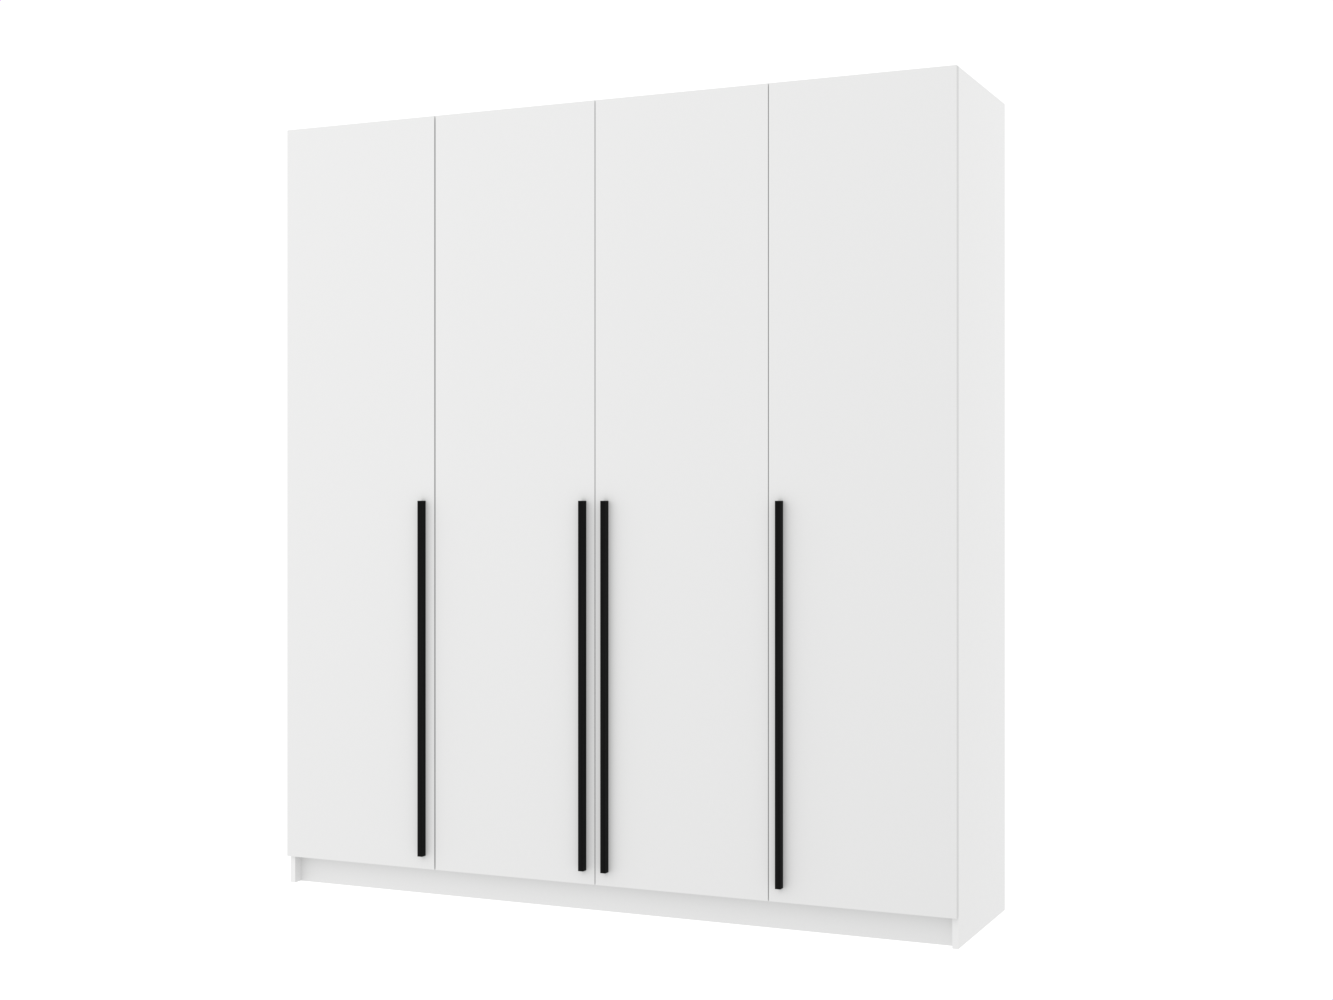 Распашной шкаф Пакс Форсанд 55 white ИКЕА (IKEA) изображение товара